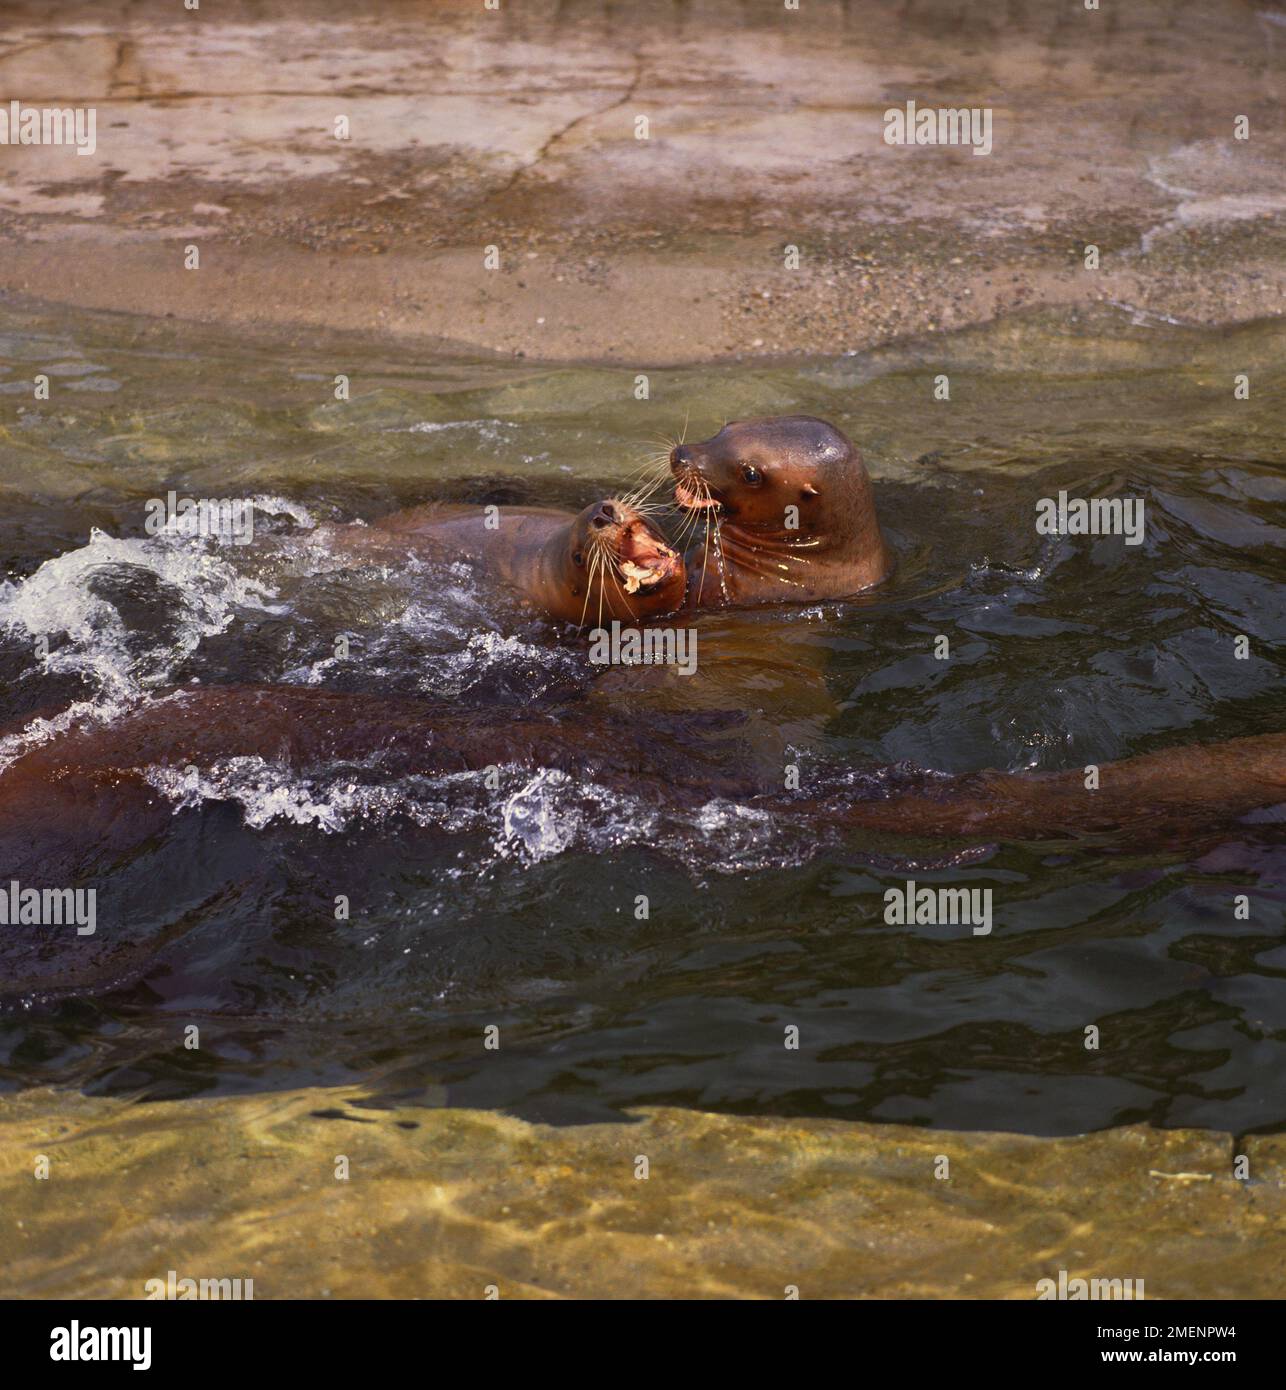 Les lions de mer de Steller se battent au-dessus d'un poisson Banque D'Images